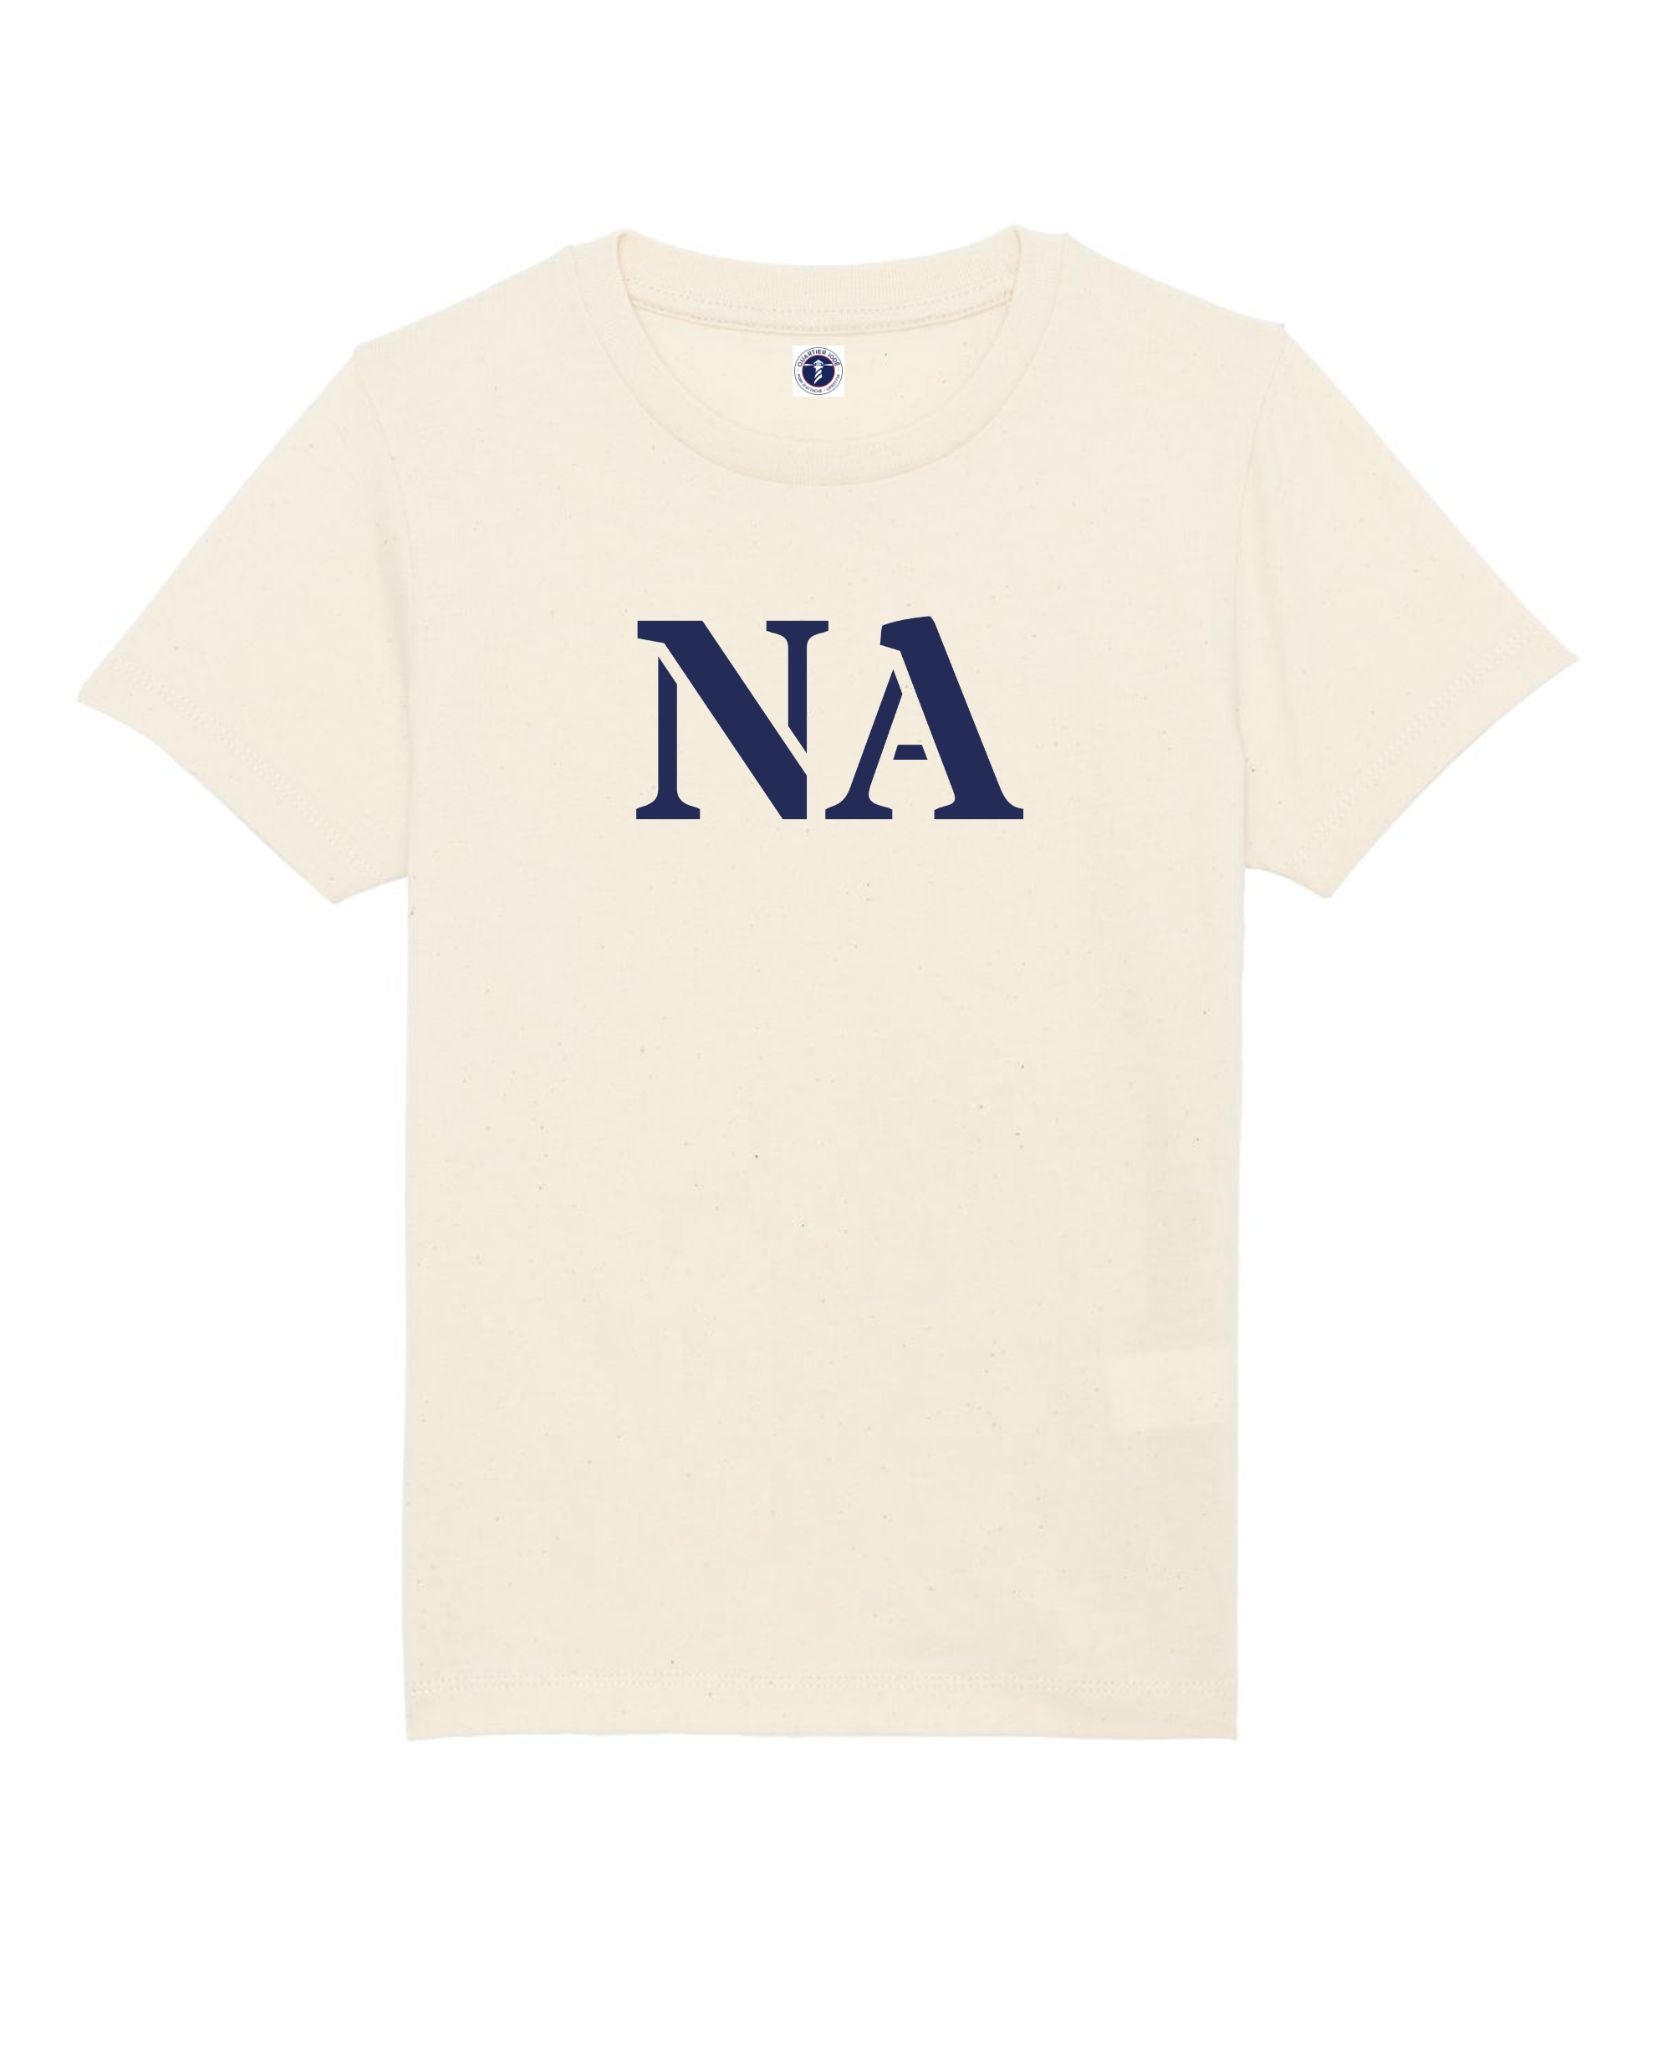 Fiers d'être nantais avec nos Tshirt pour enfants et ados de Quartier Iodé. Il est marque des initiales de Nantes : NA.